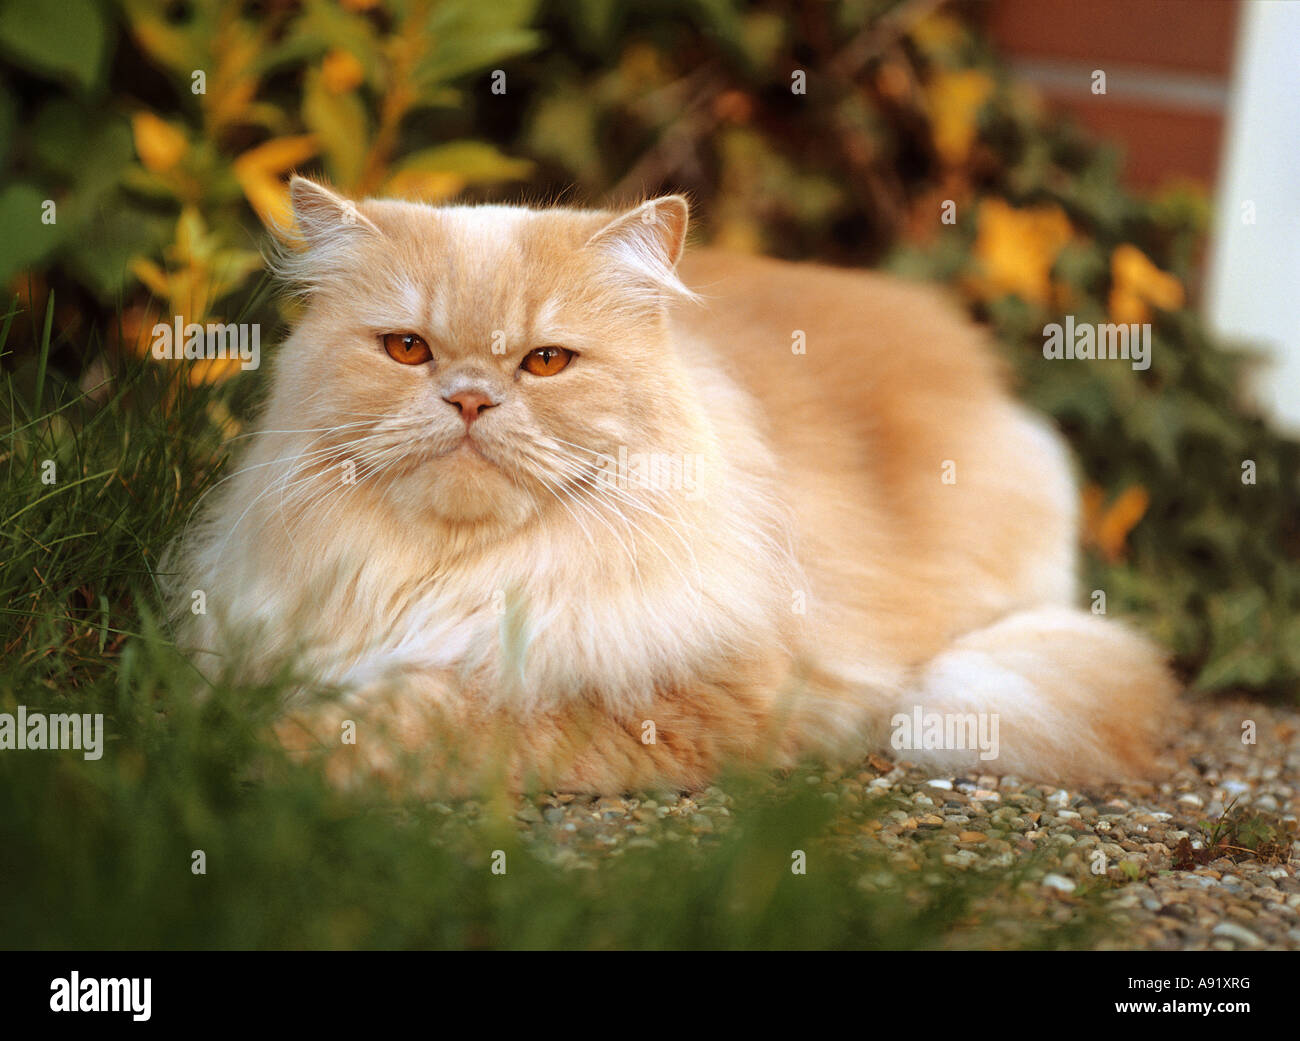 Gato persa. Adulto acostado en un jardín Foto de stock